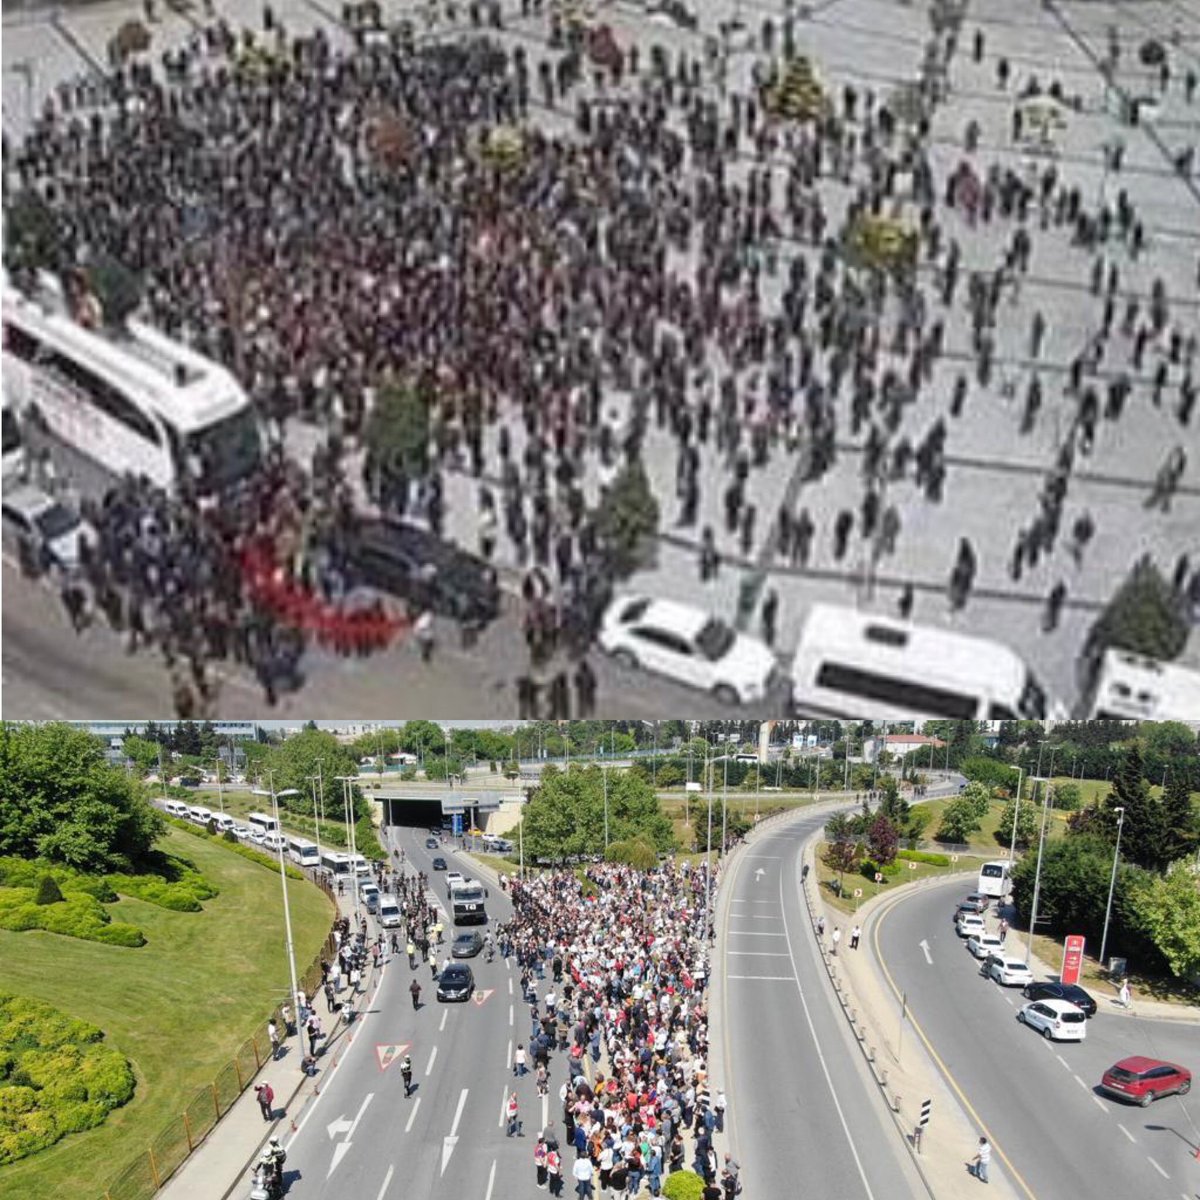 Canan abla gün arkadaşlarını toplamış , Atatürk Havalimanında  protesto düzenledi.
 Görüntüler mi ?
Rize mitingi değil Atatürk Havalimanı 😎 
SENİNLEYİZ REİS 🇹🇷
#ErdoğanıDurduramayacaksınız 
#MilletBahcesi